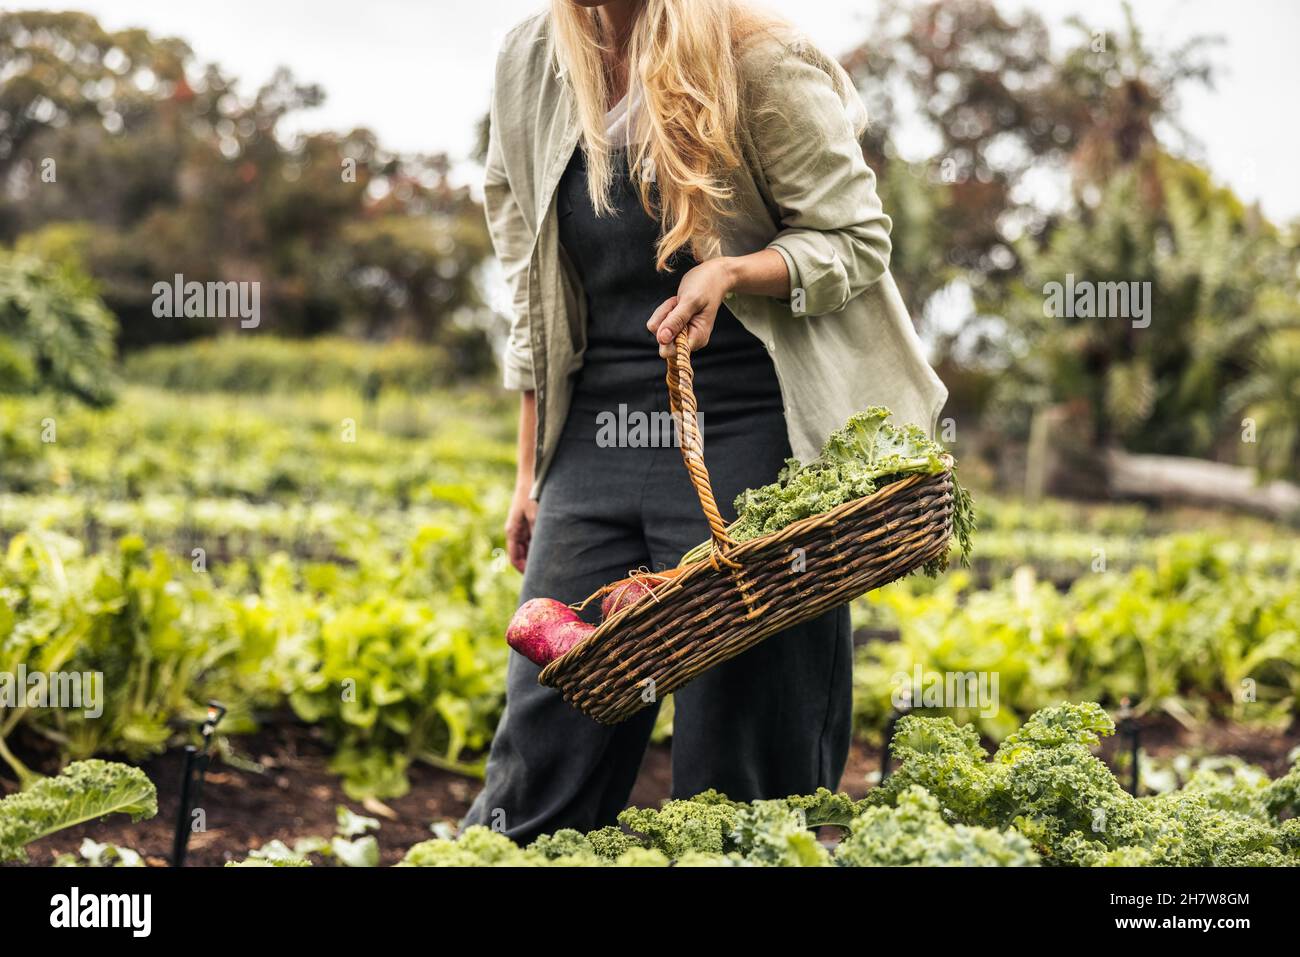 Anonyme Gärtnerin sammelt frisches Gemüse. Eine junge Frau, die in einem Bio-Garten einen Korb voller frischer Produkte hält. Selbstverständnis Stockfoto